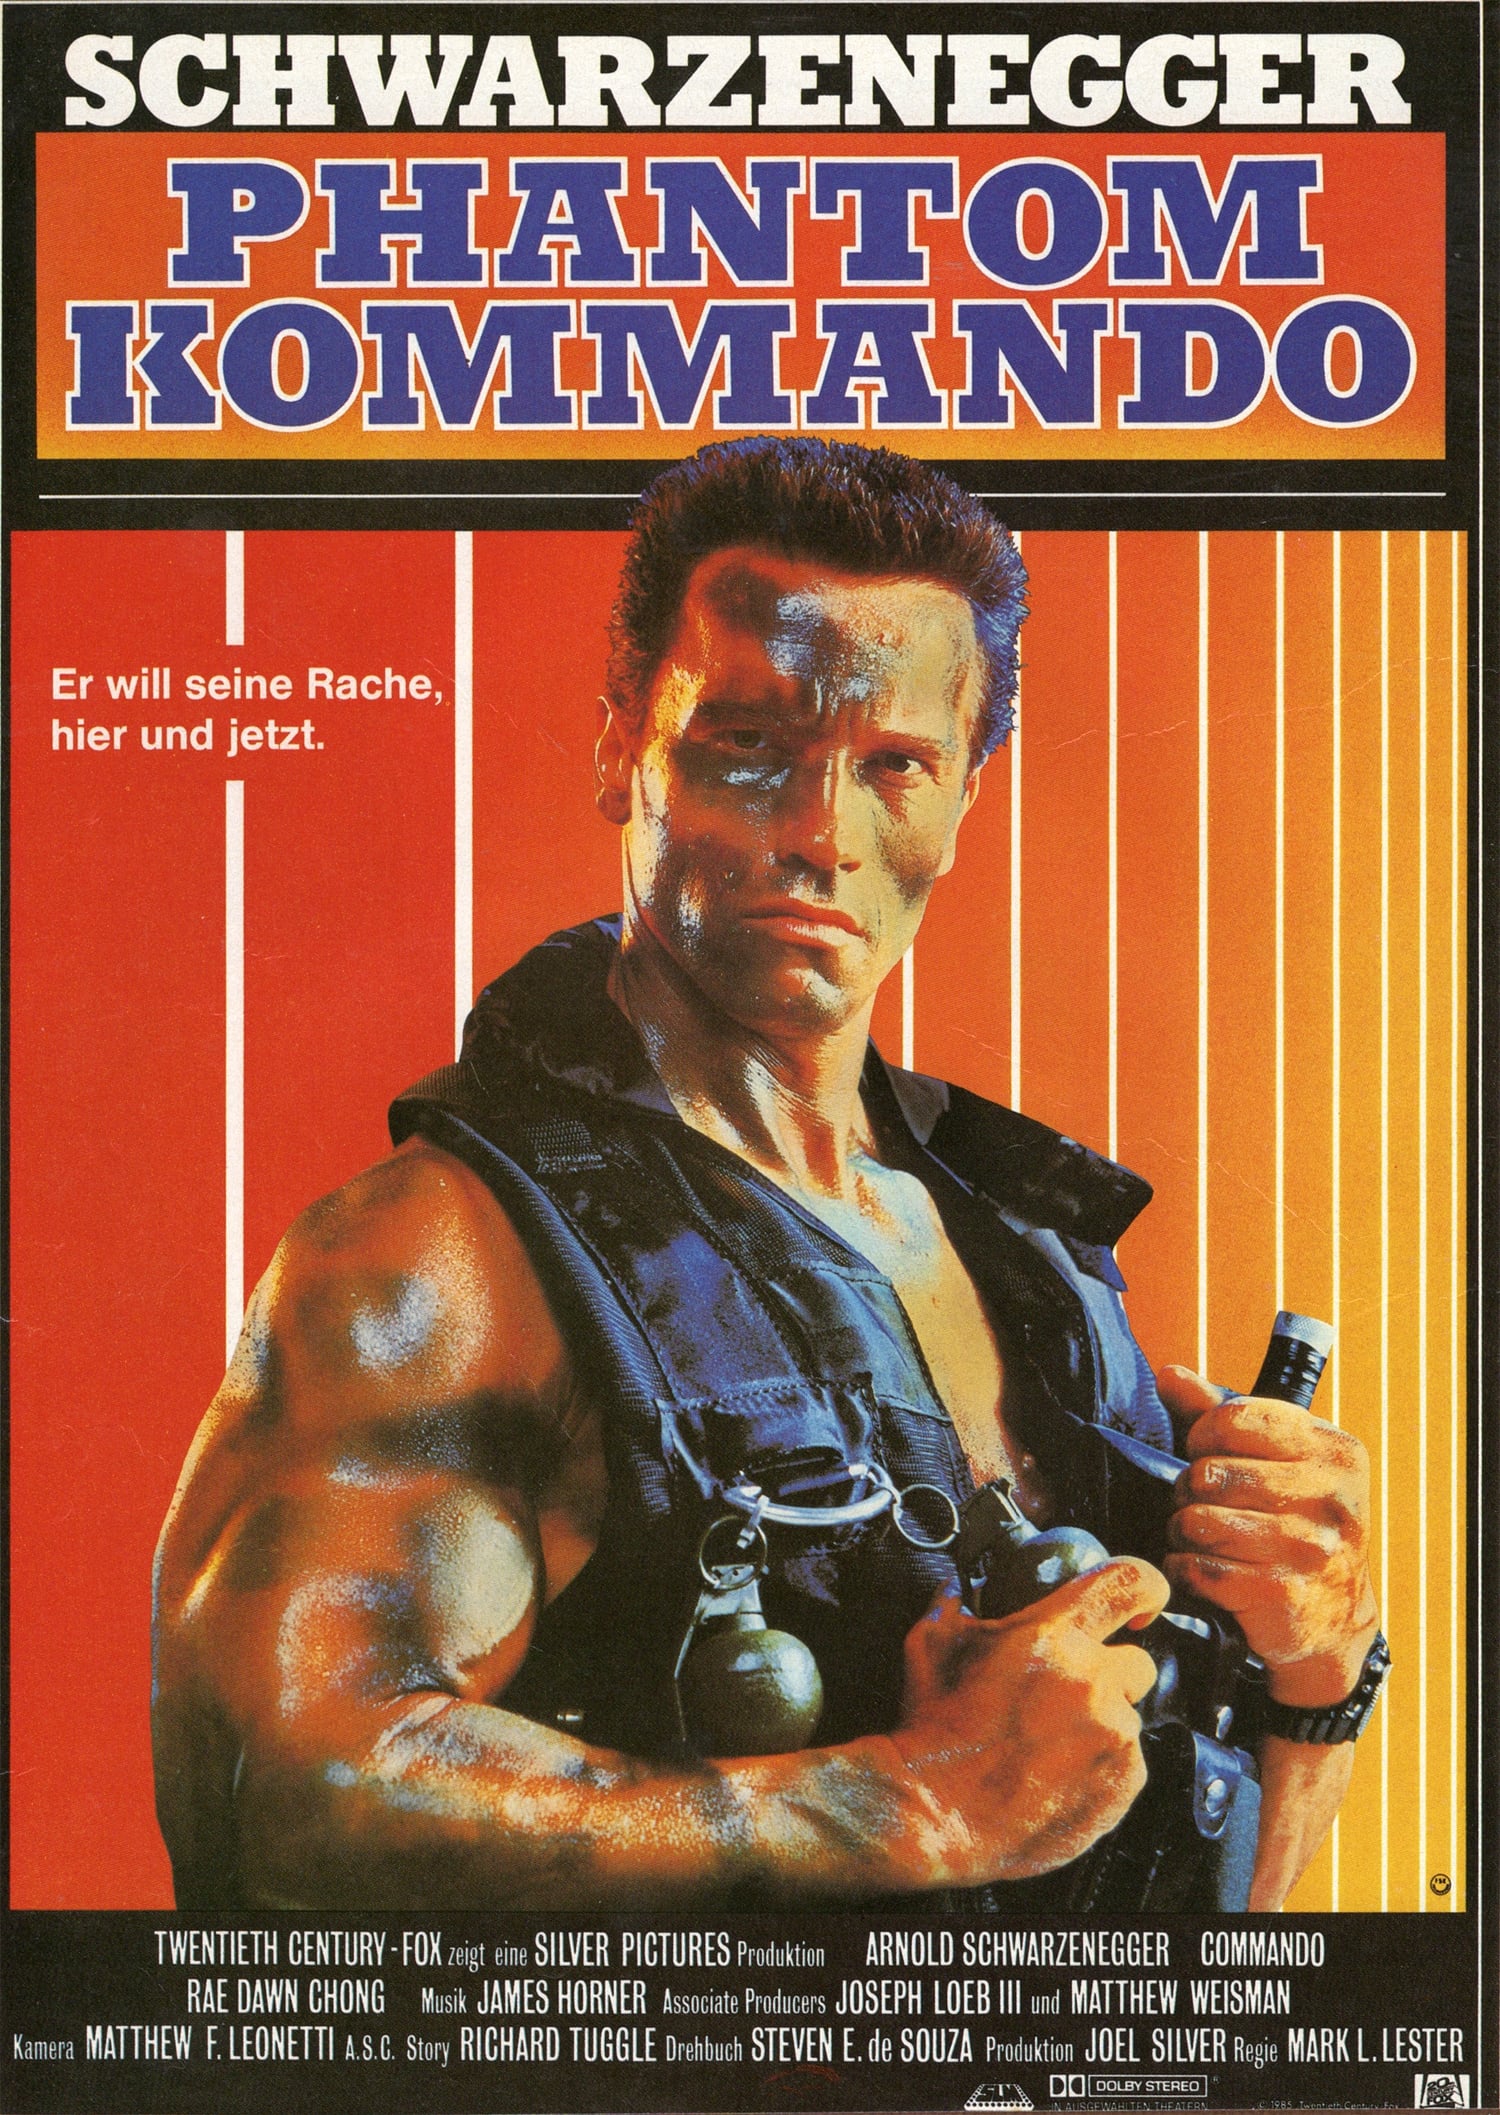 1985 Commando